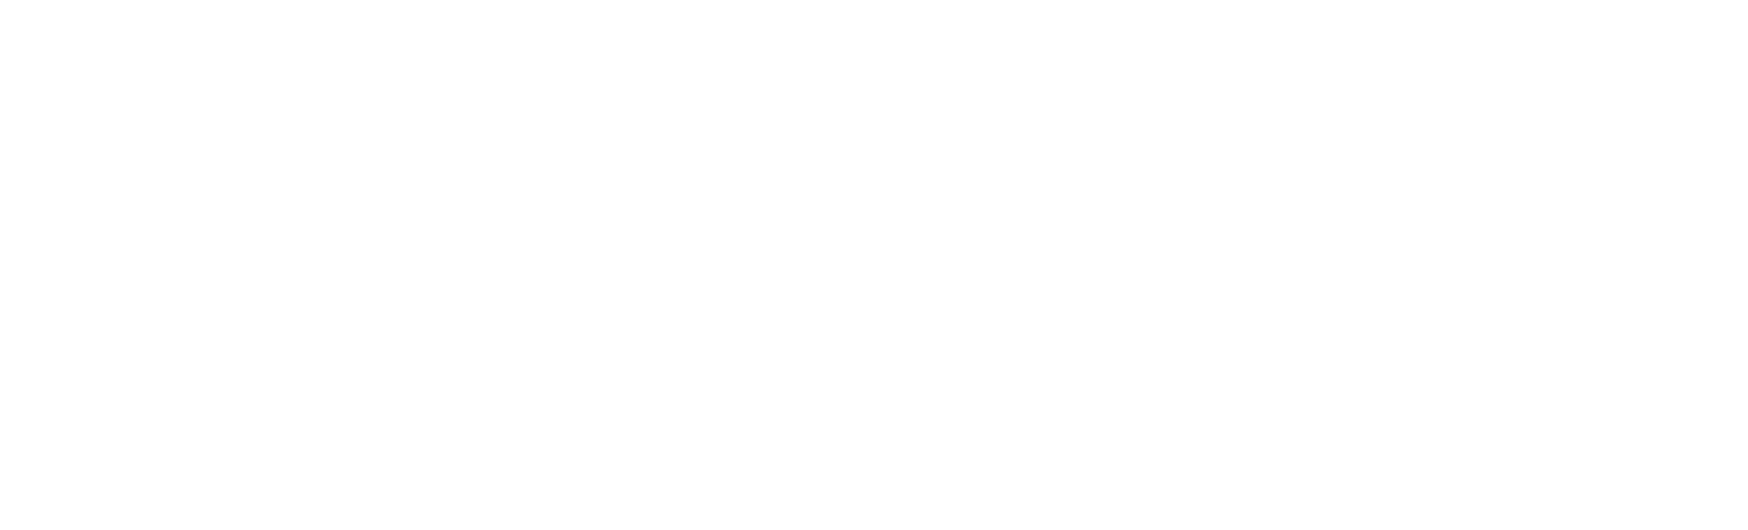 GMI Anugerah Jakarta